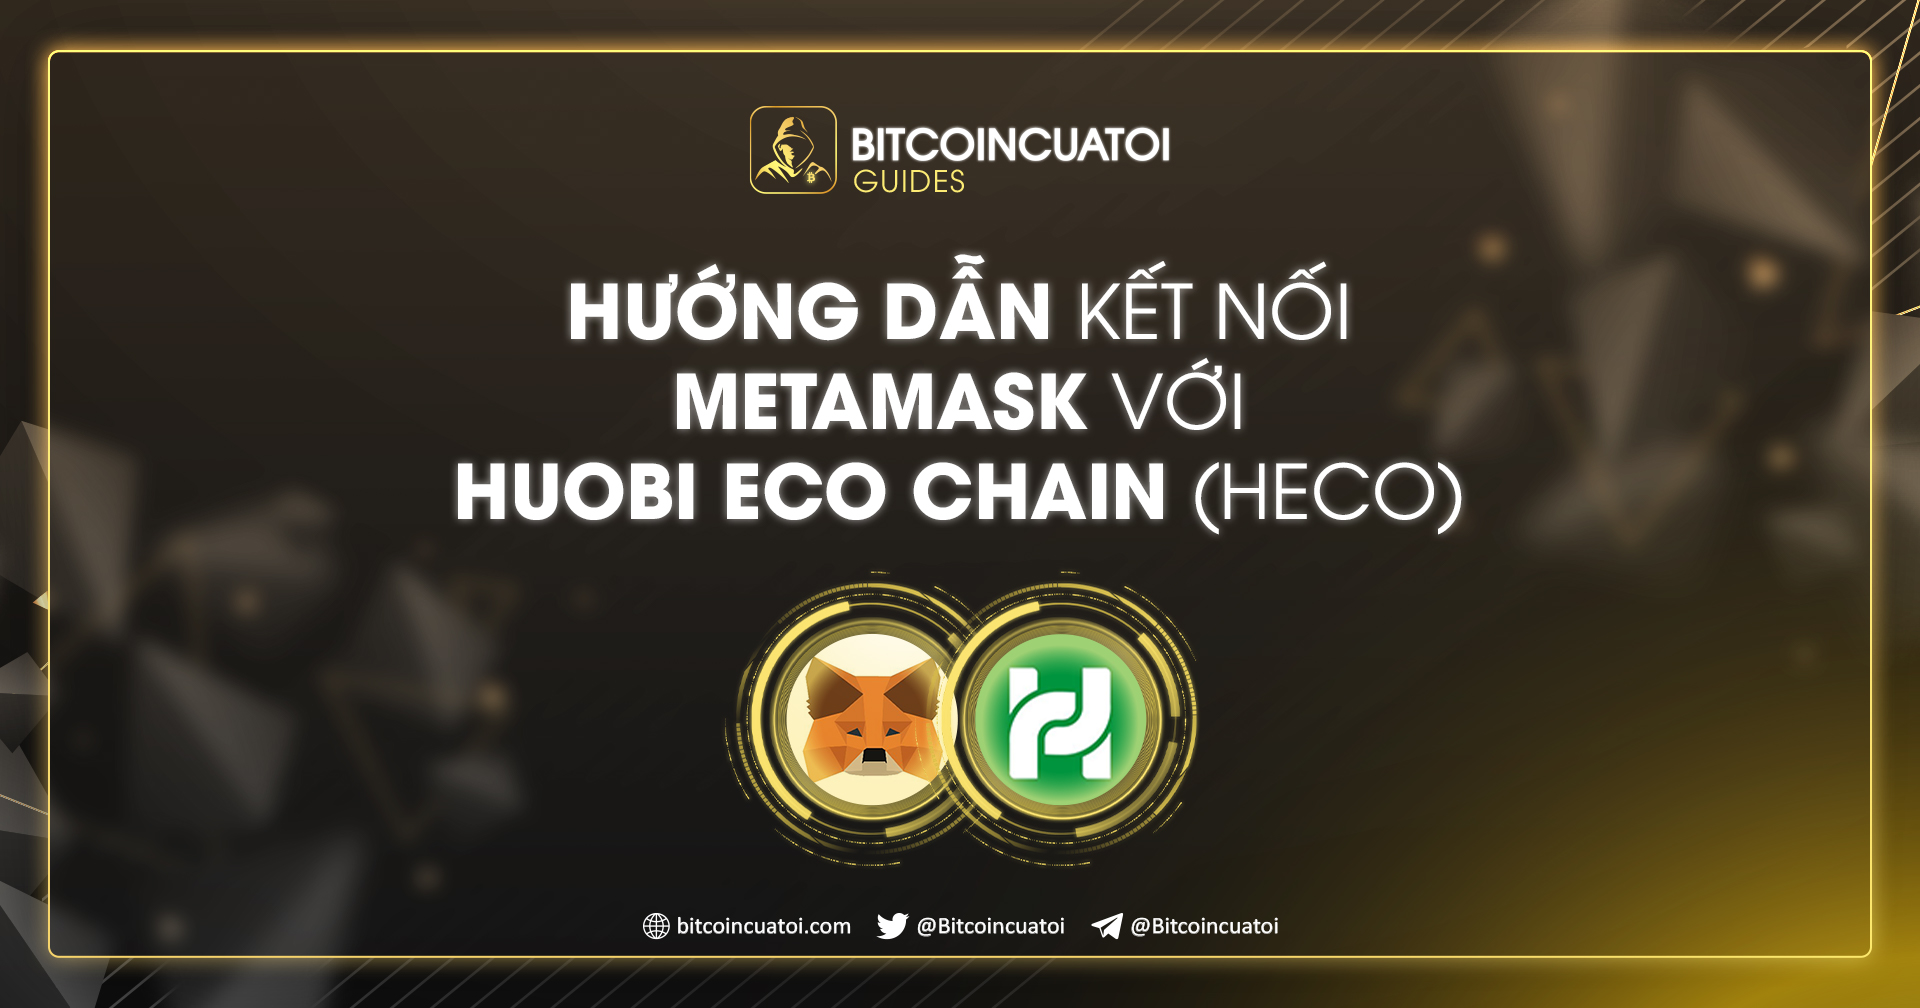 Hướng dẫn kết nối MetaMask với Huobi ECO Chain (HECO)